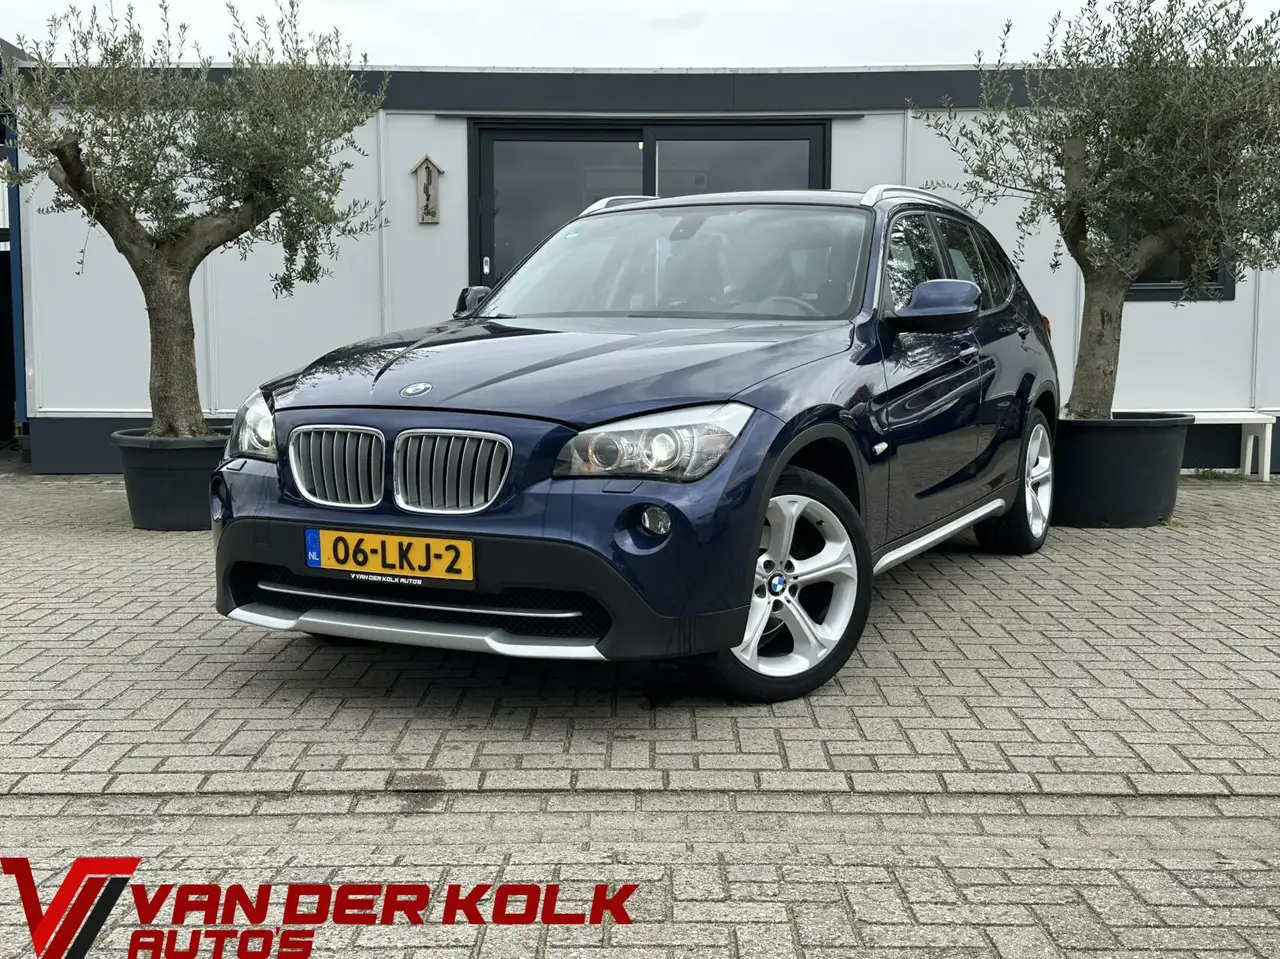 BMW X1 SUV/4x4/Pick-up in Blauw tweedehands in NIEUWLEUSEN voor € 9.885,-